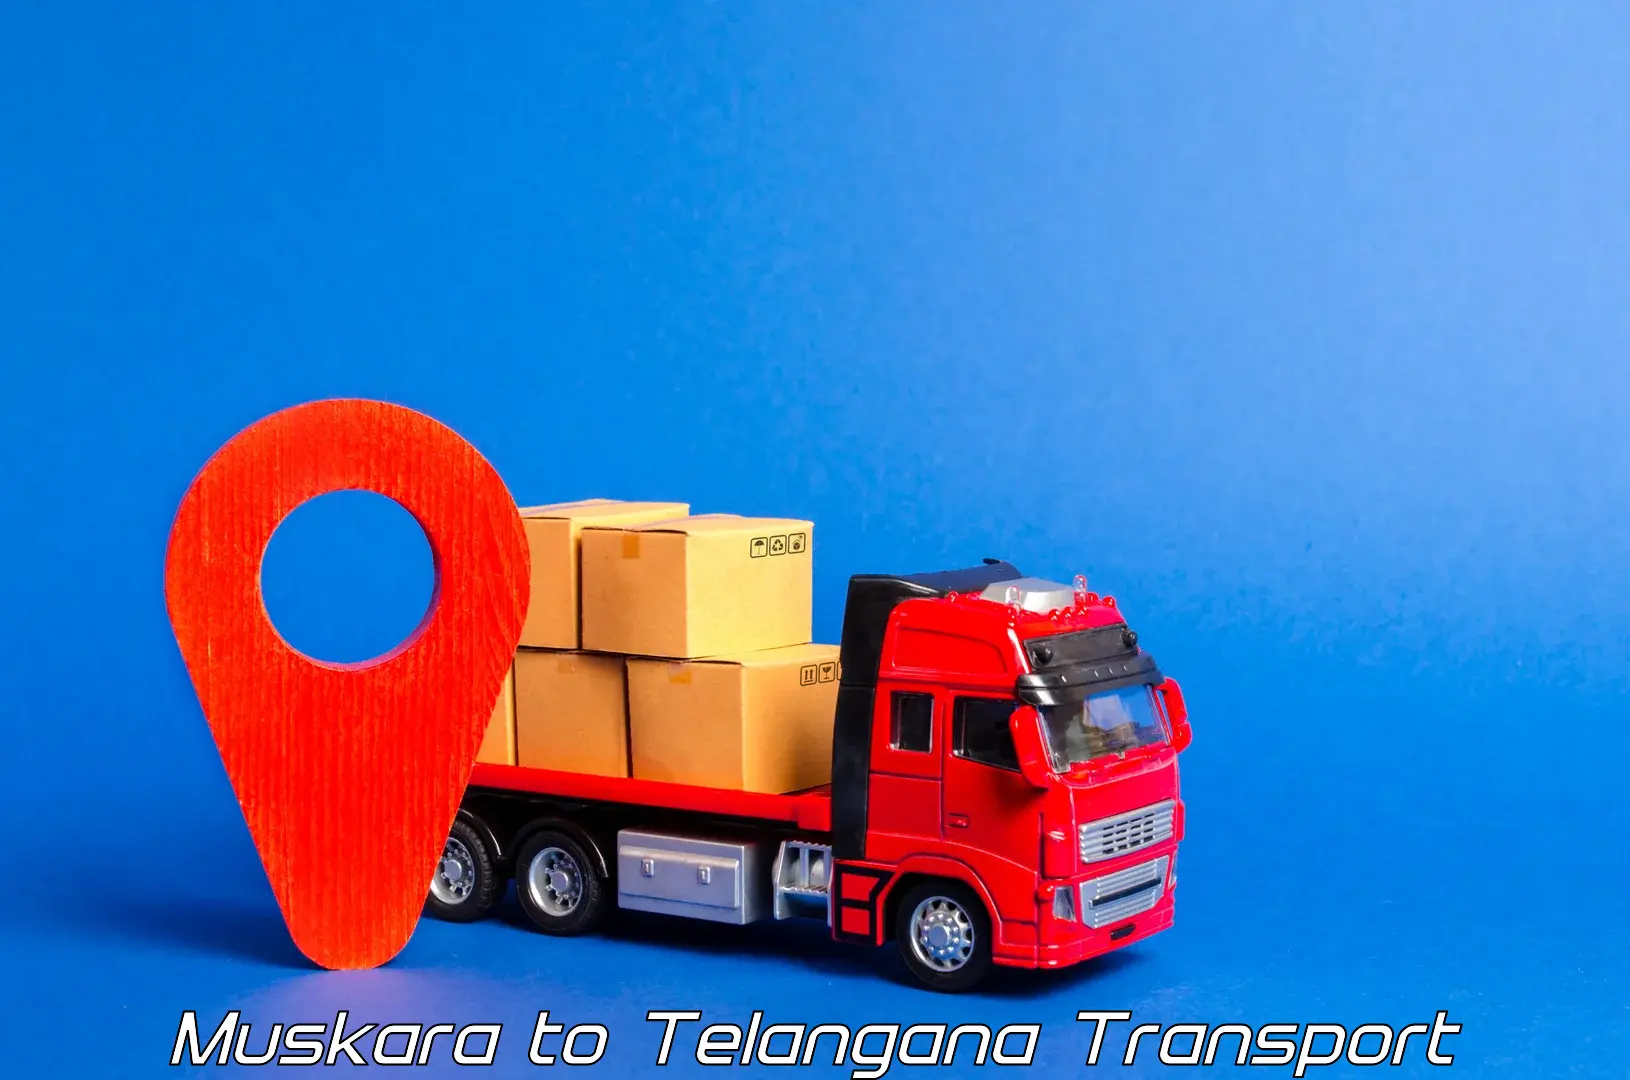 Nearby transport service Muskara to Bhuvanagiri